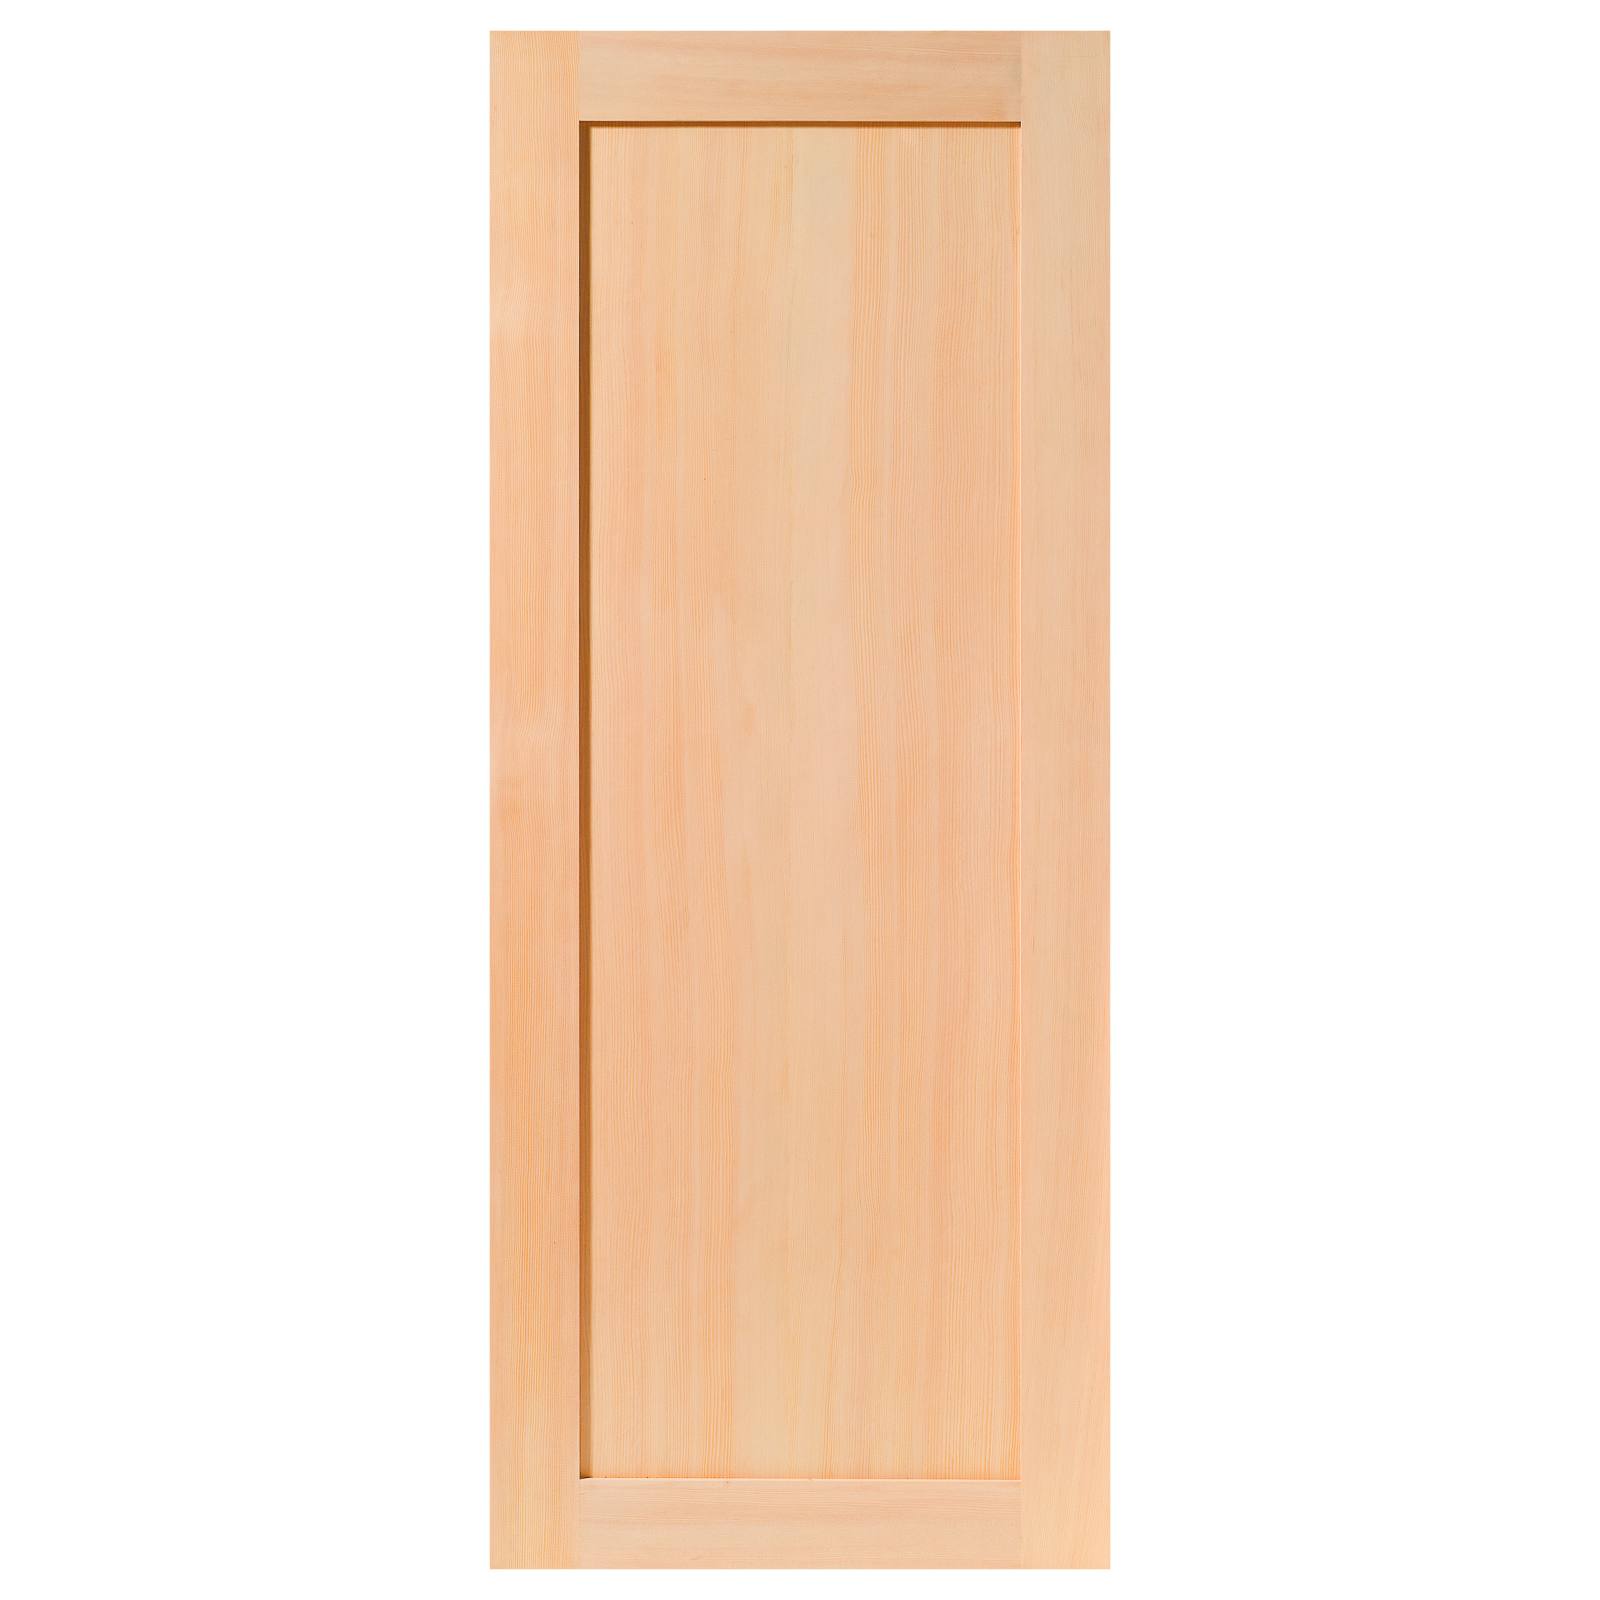 Deco Internal 1 Panel 82cm Door, Raw Hemlock HV